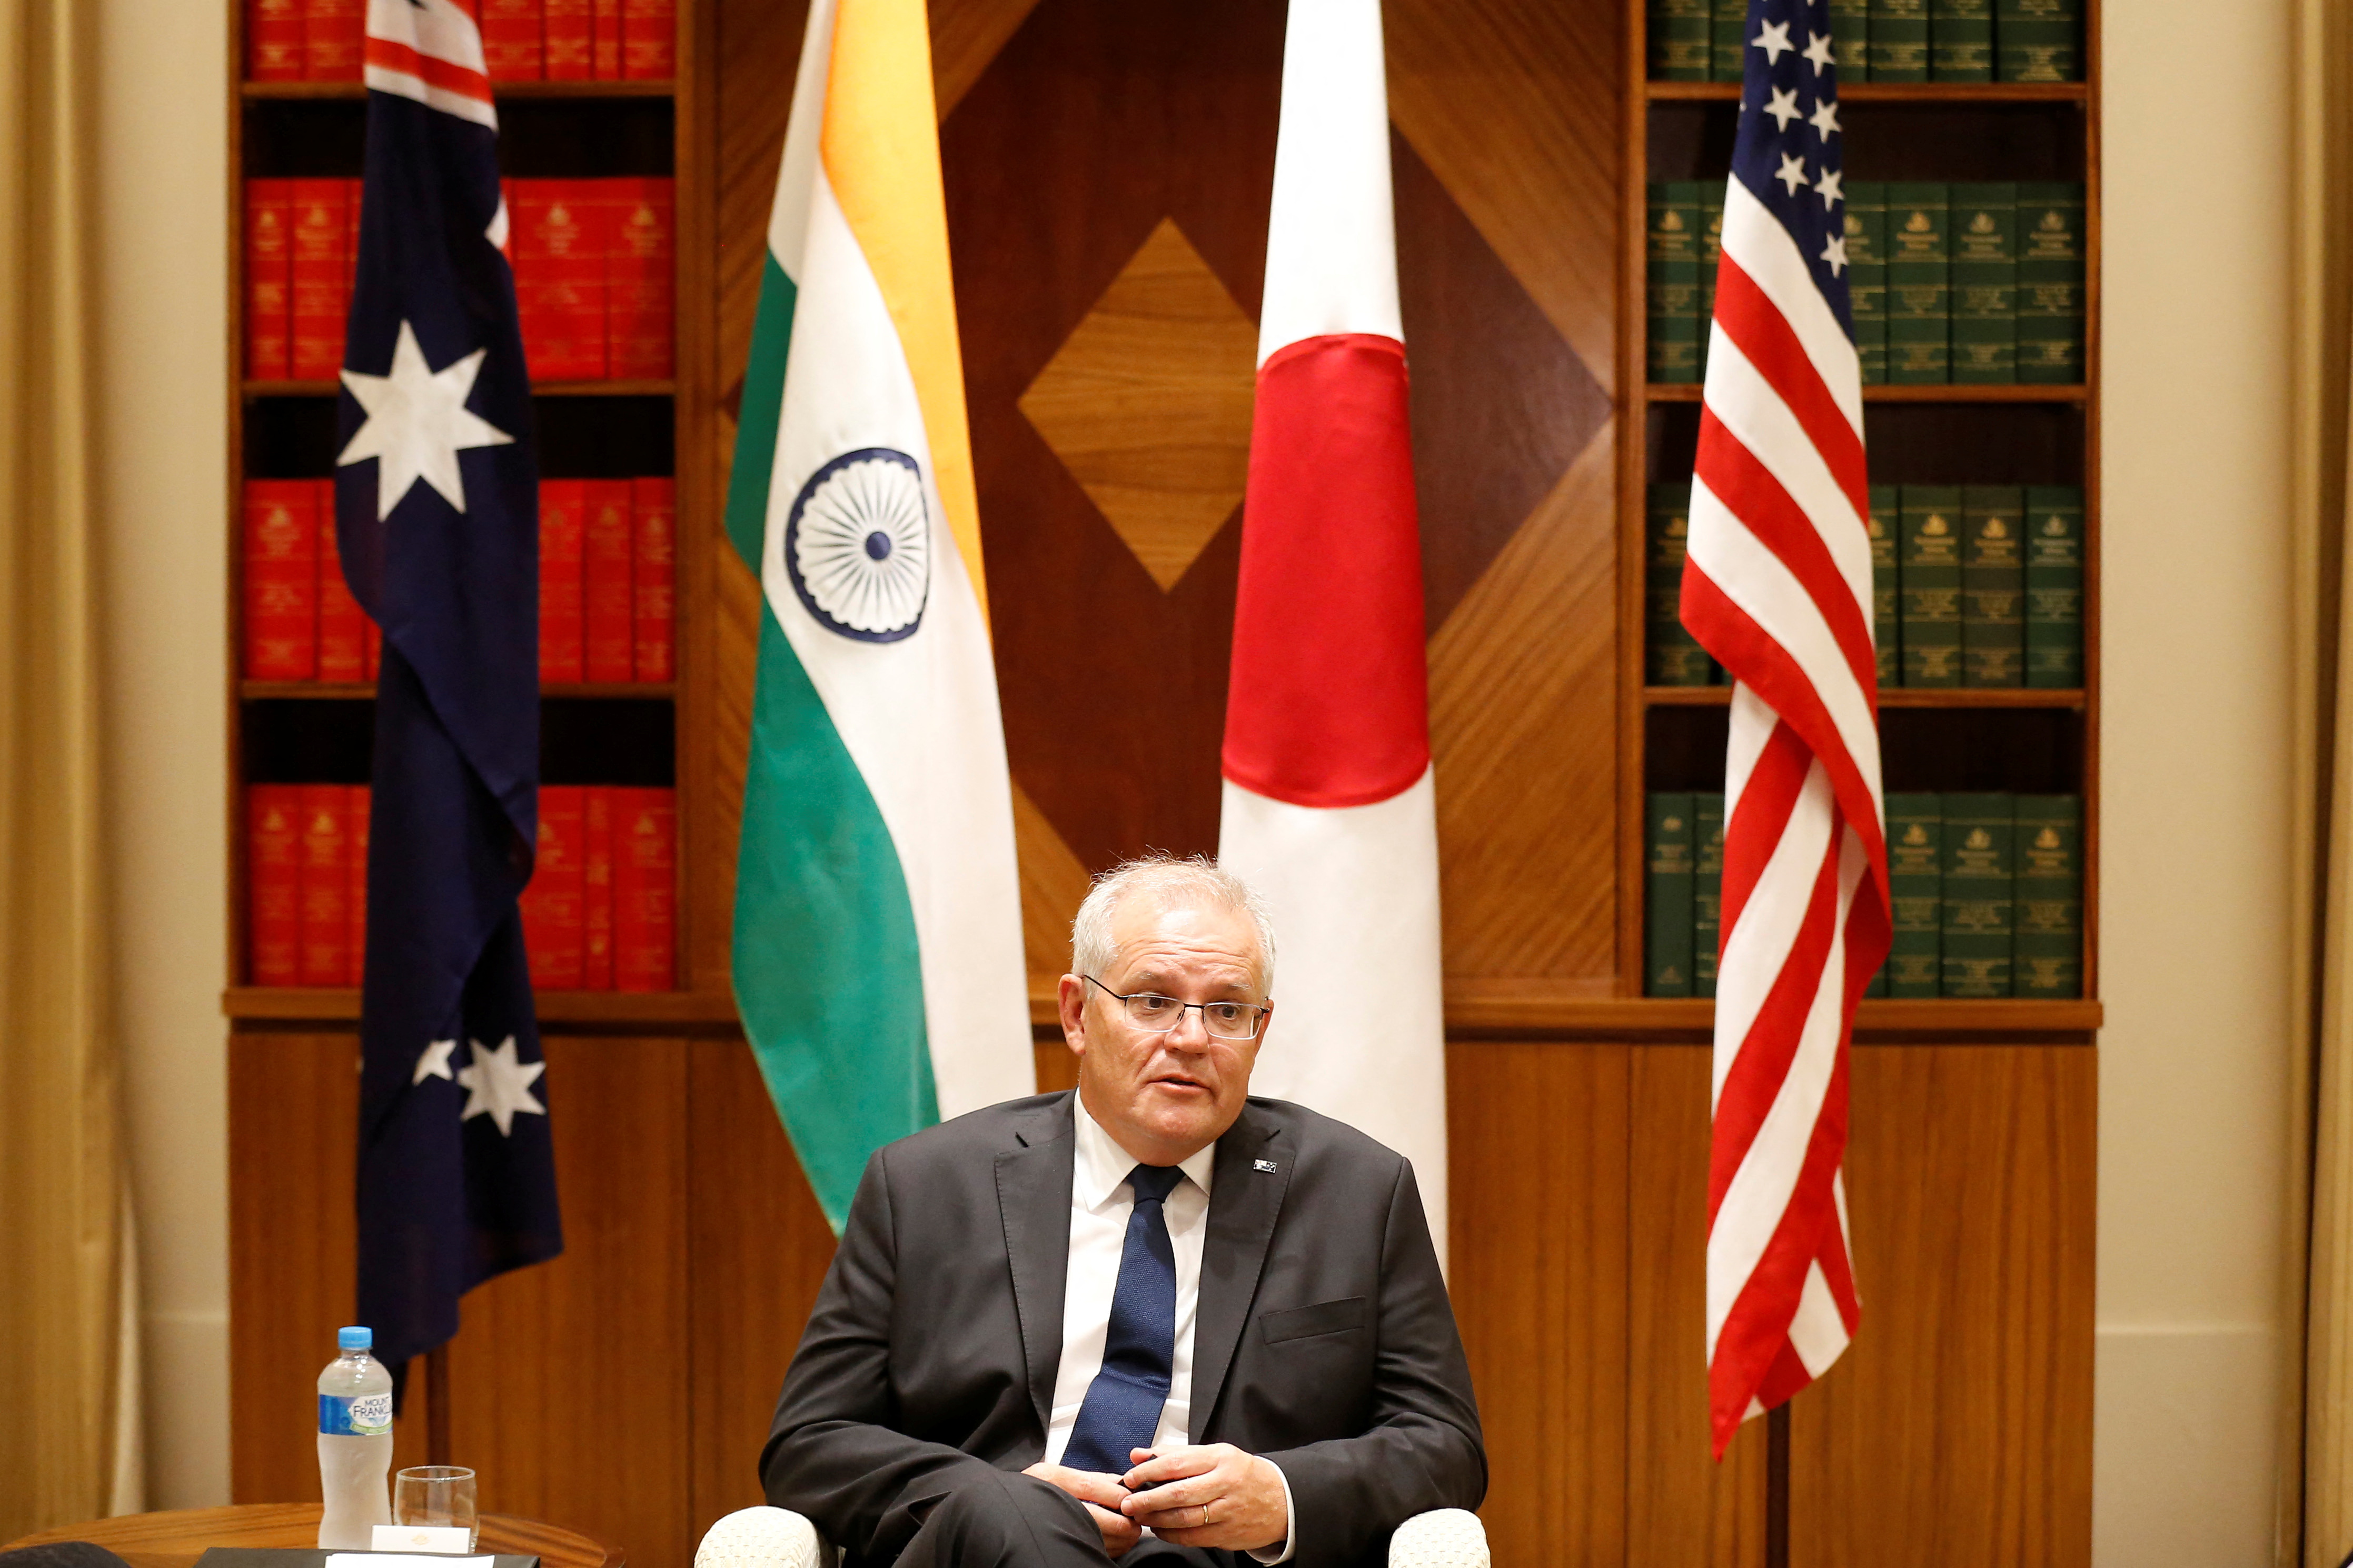 Der australische Premierminister Scott Morrison spricht am 11. Februar 2022 im Büro des Commonwealth-Parlaments in Melbourne, Australien, zu den Medien. Darrian Traynor/Pool via REUTERS